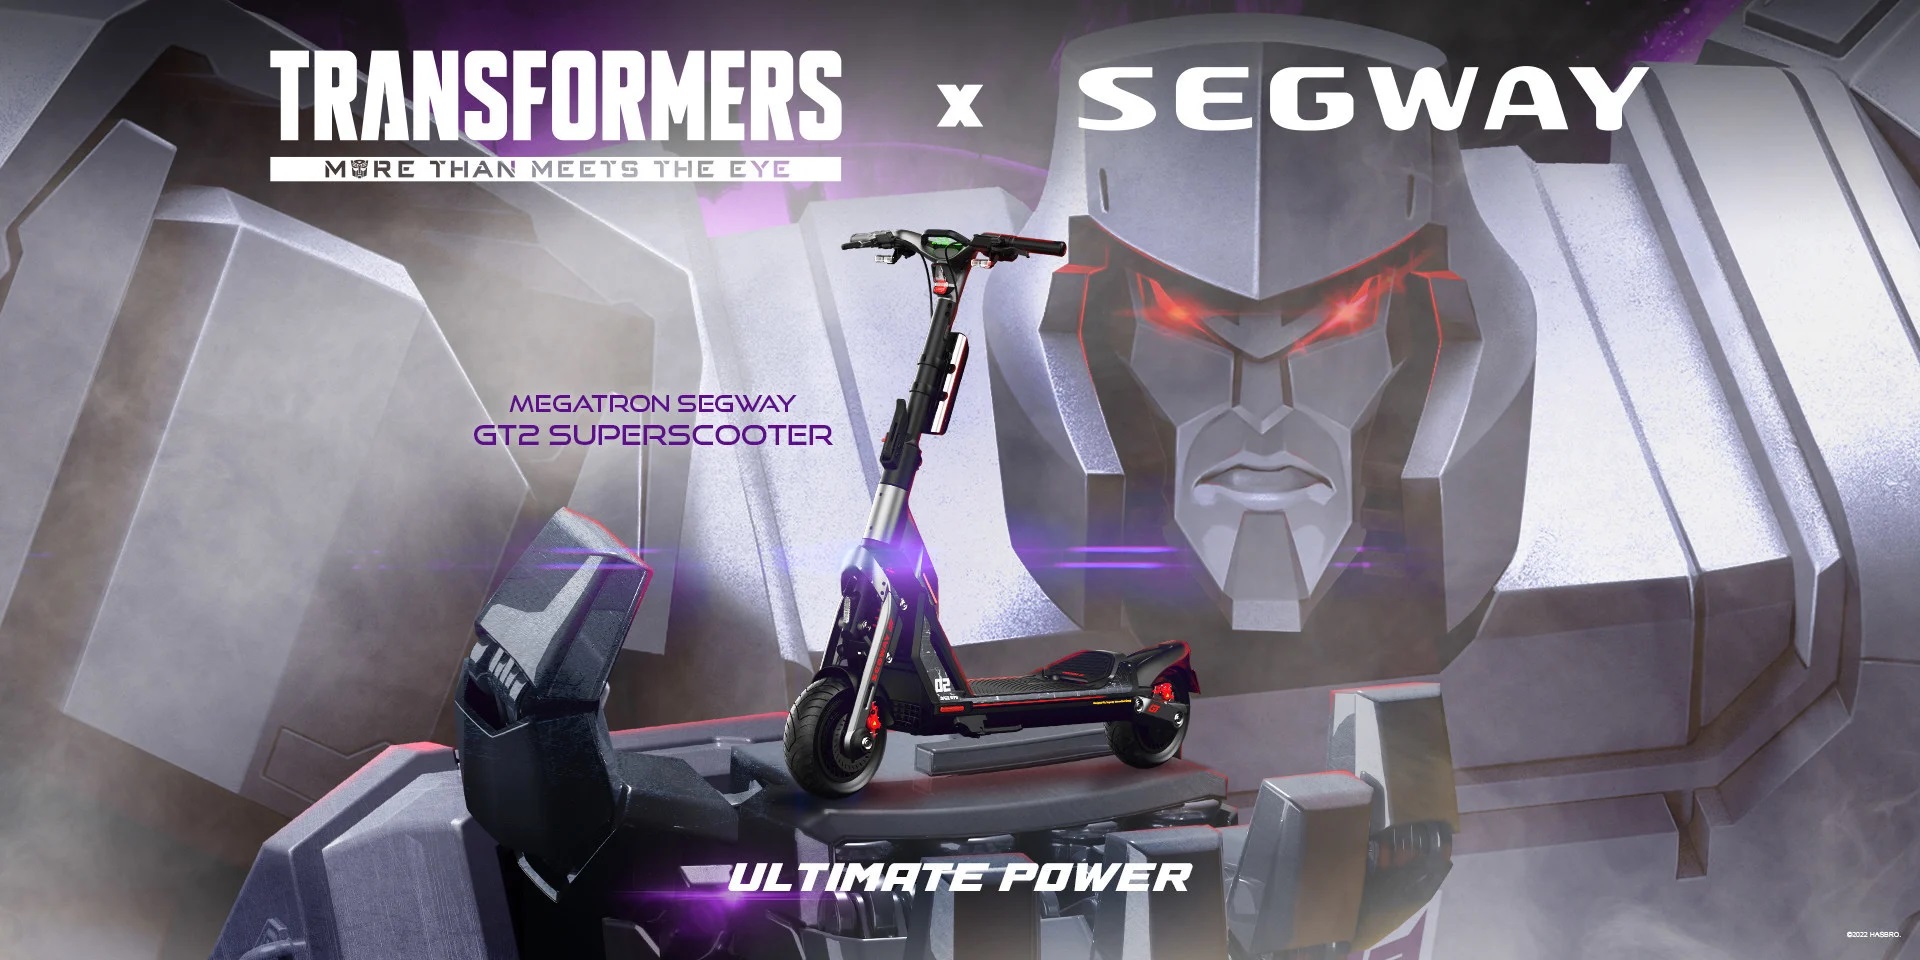 Segway-Ninebot y Hasbro lanzan una edición limitada de gokarts y e-scooters de Transformers 